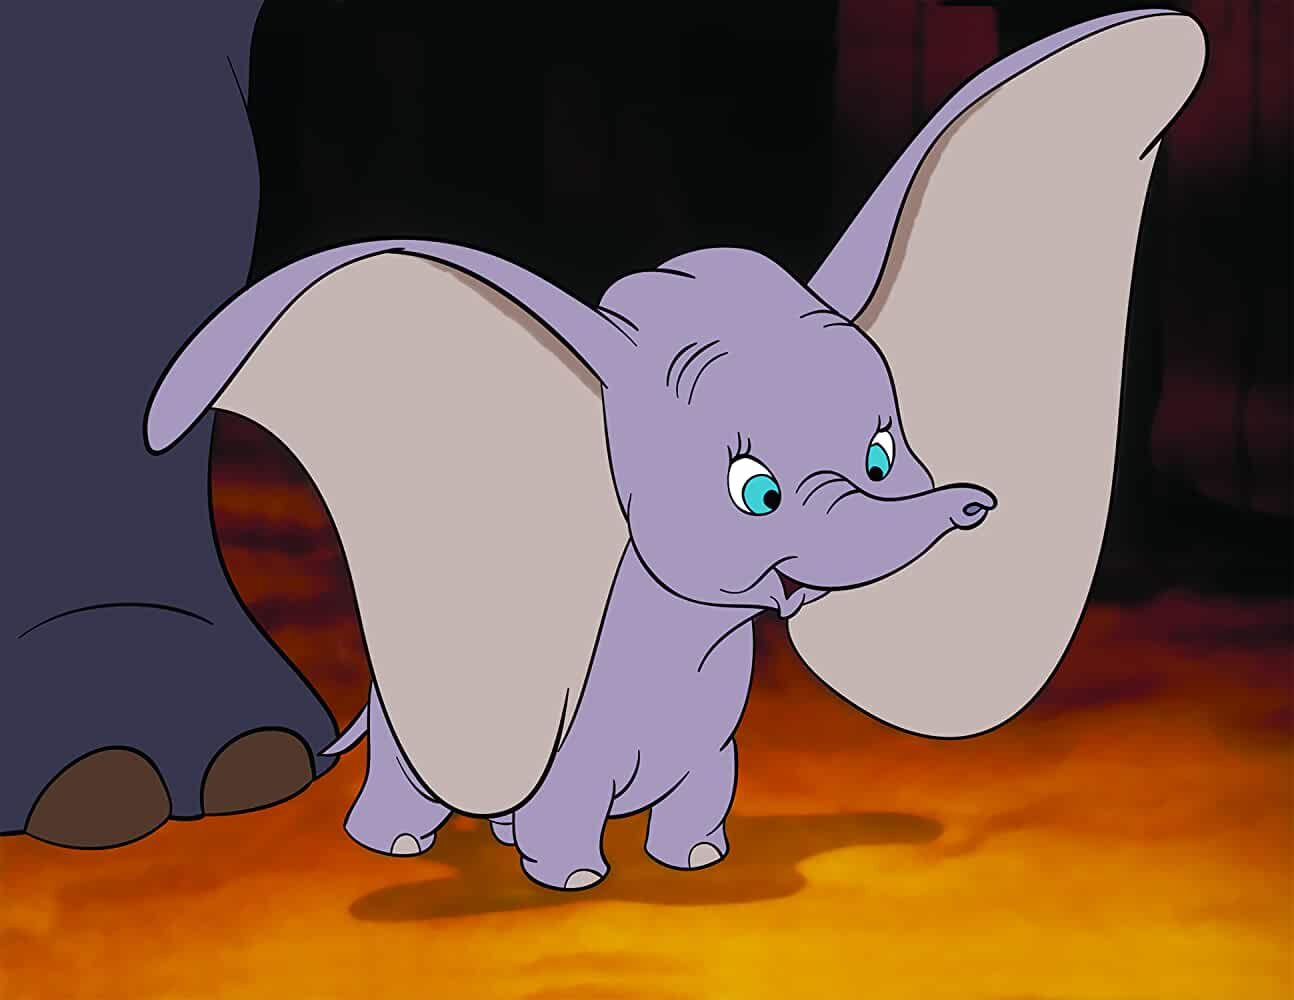 Disney Films: Dumbo